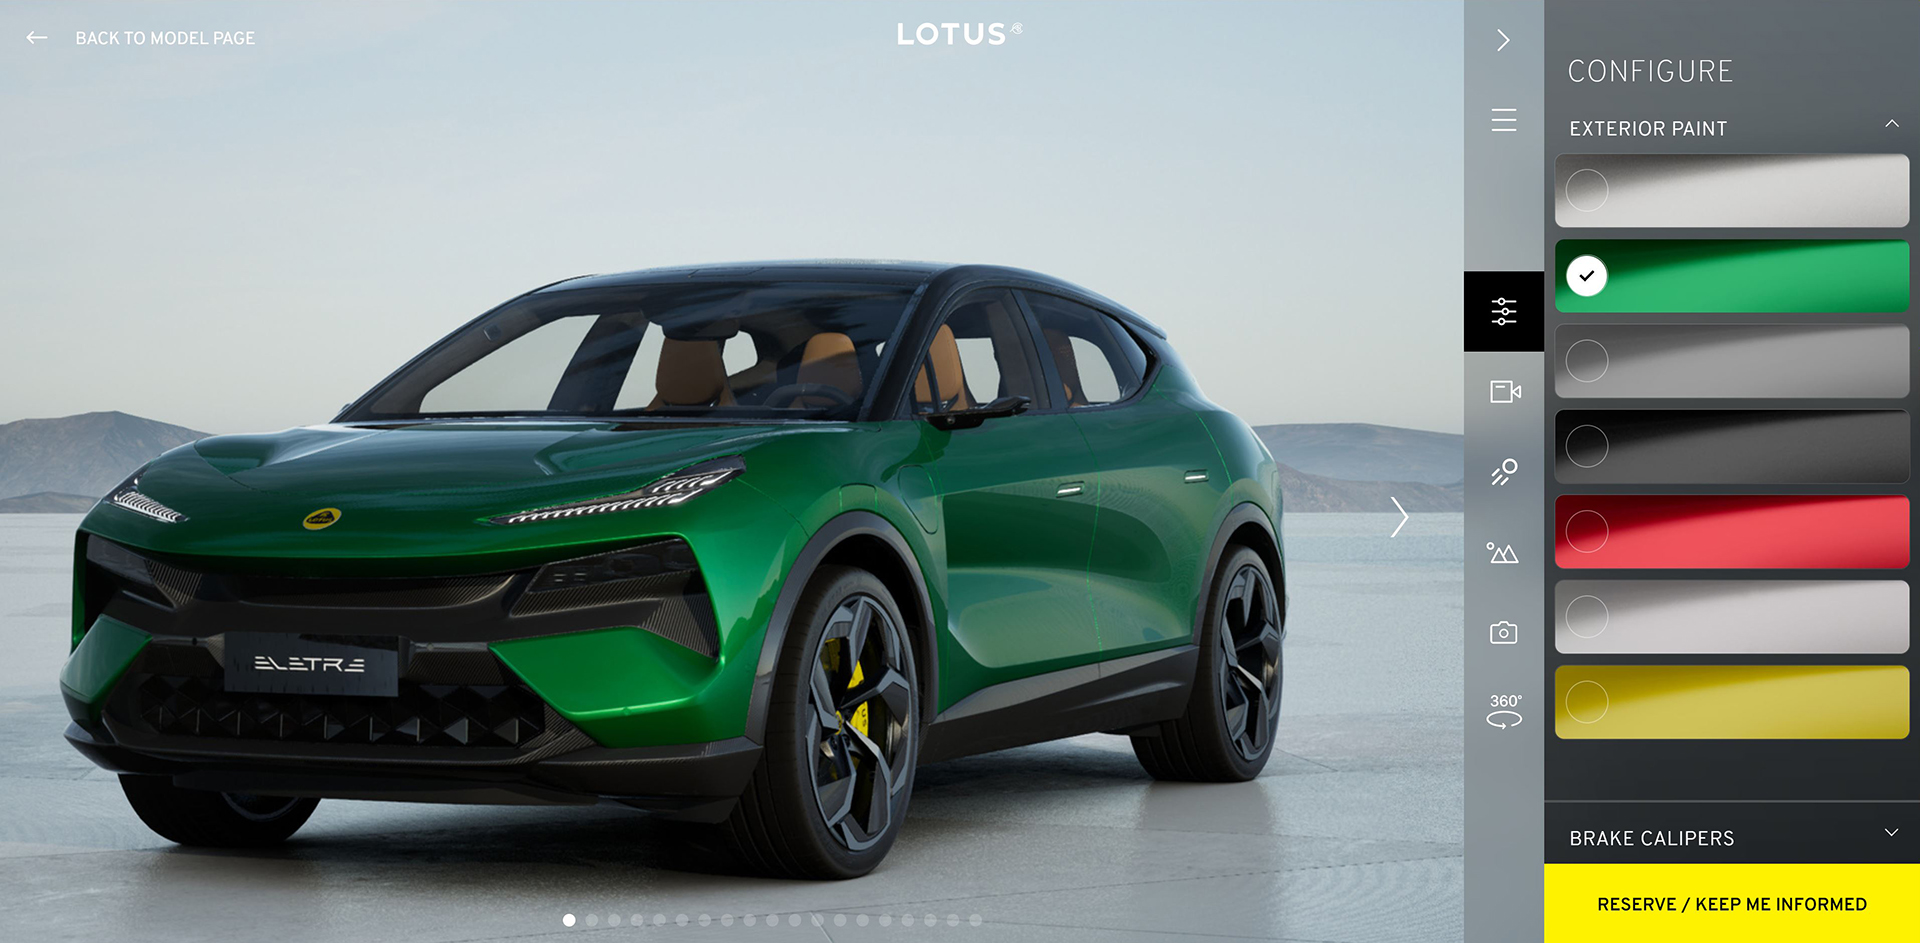 Lotus car configurator